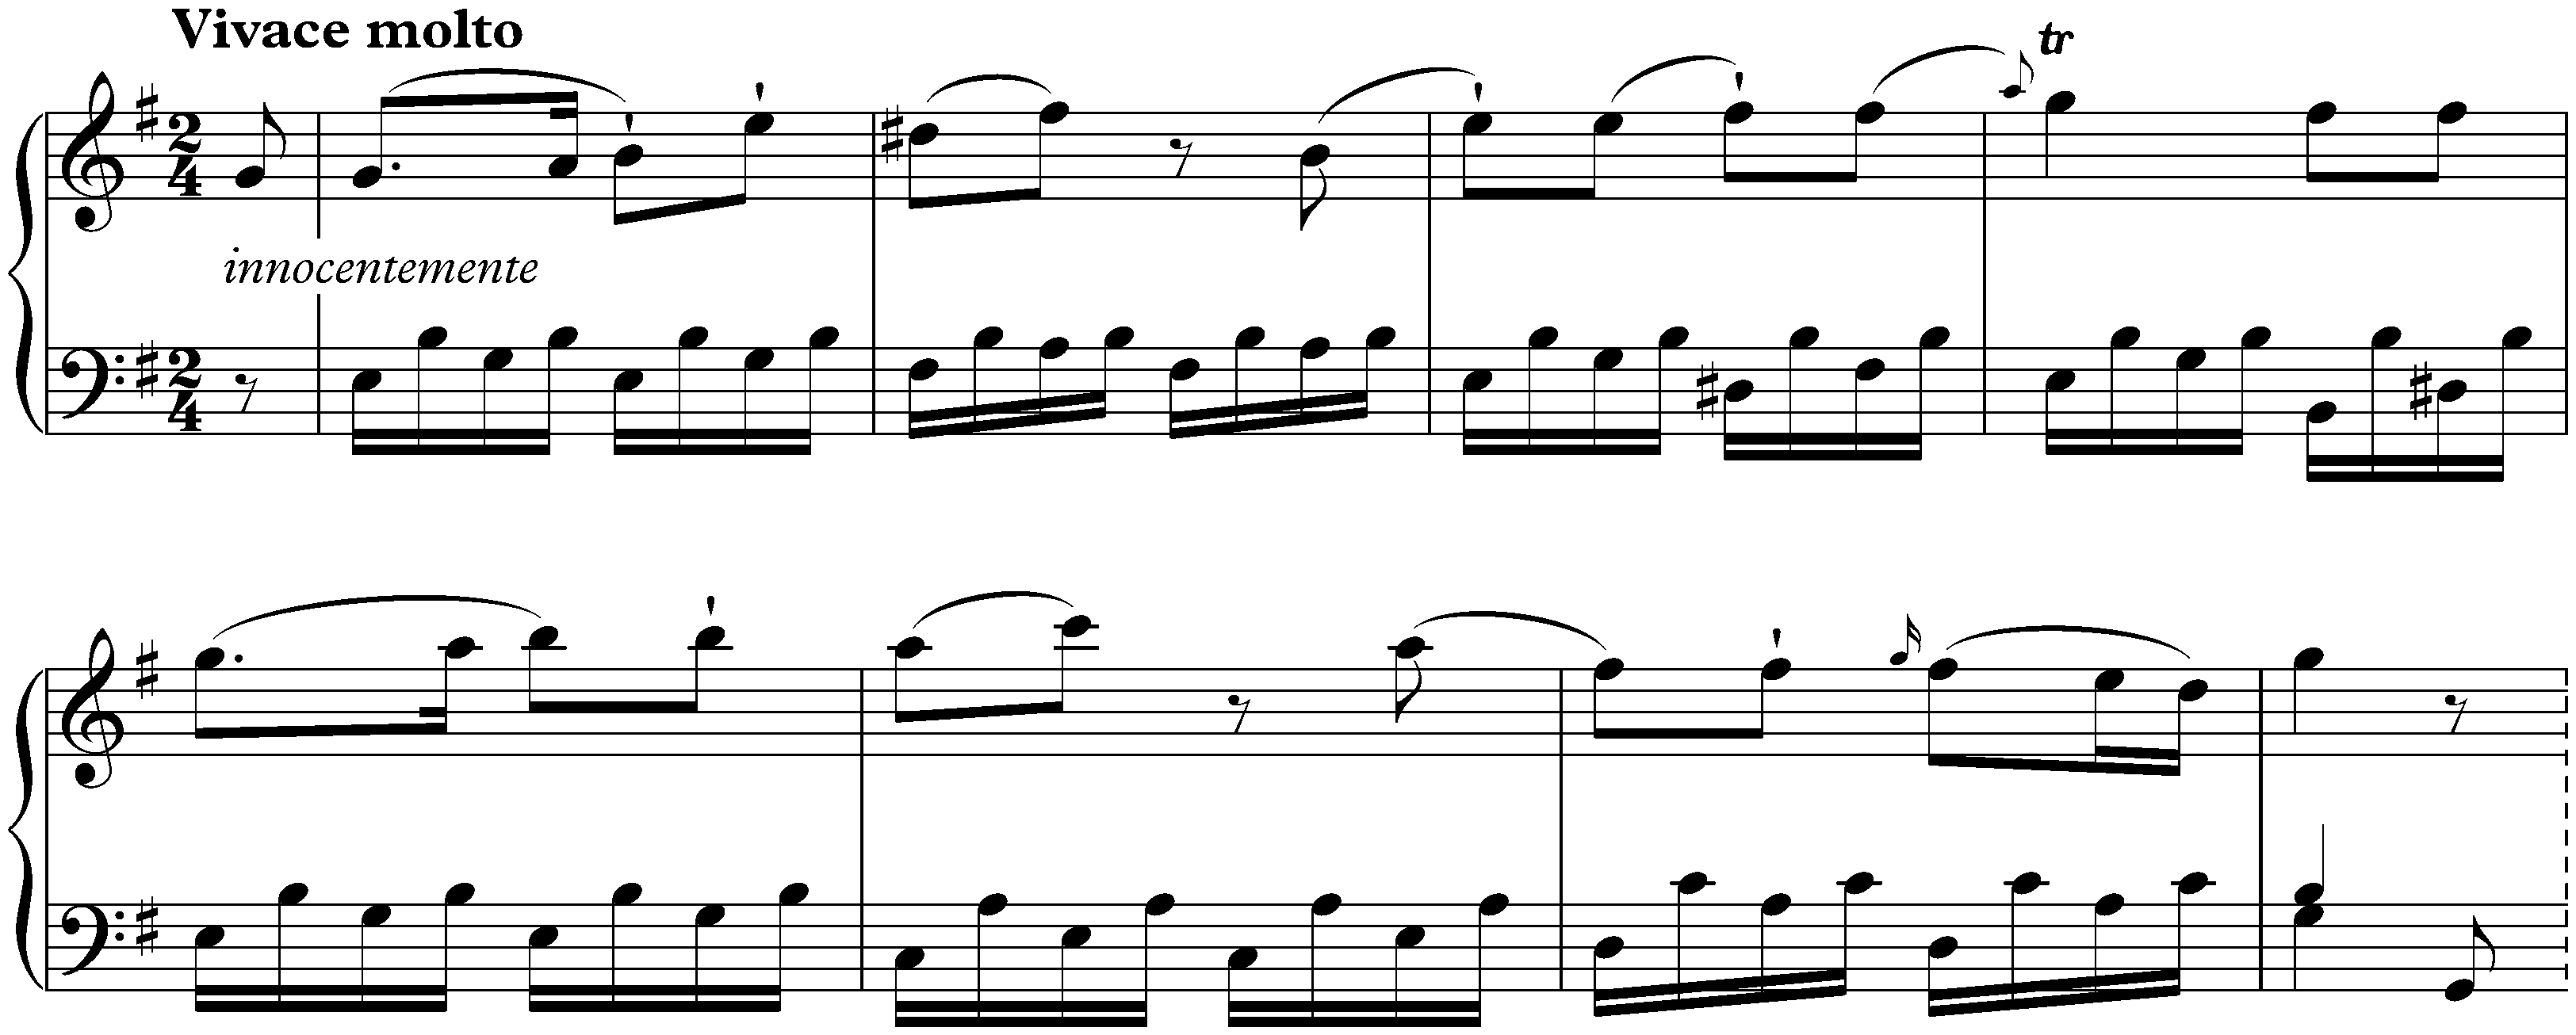 Sonata in E minor, Hob. XVI:34; 3. Vivace molto